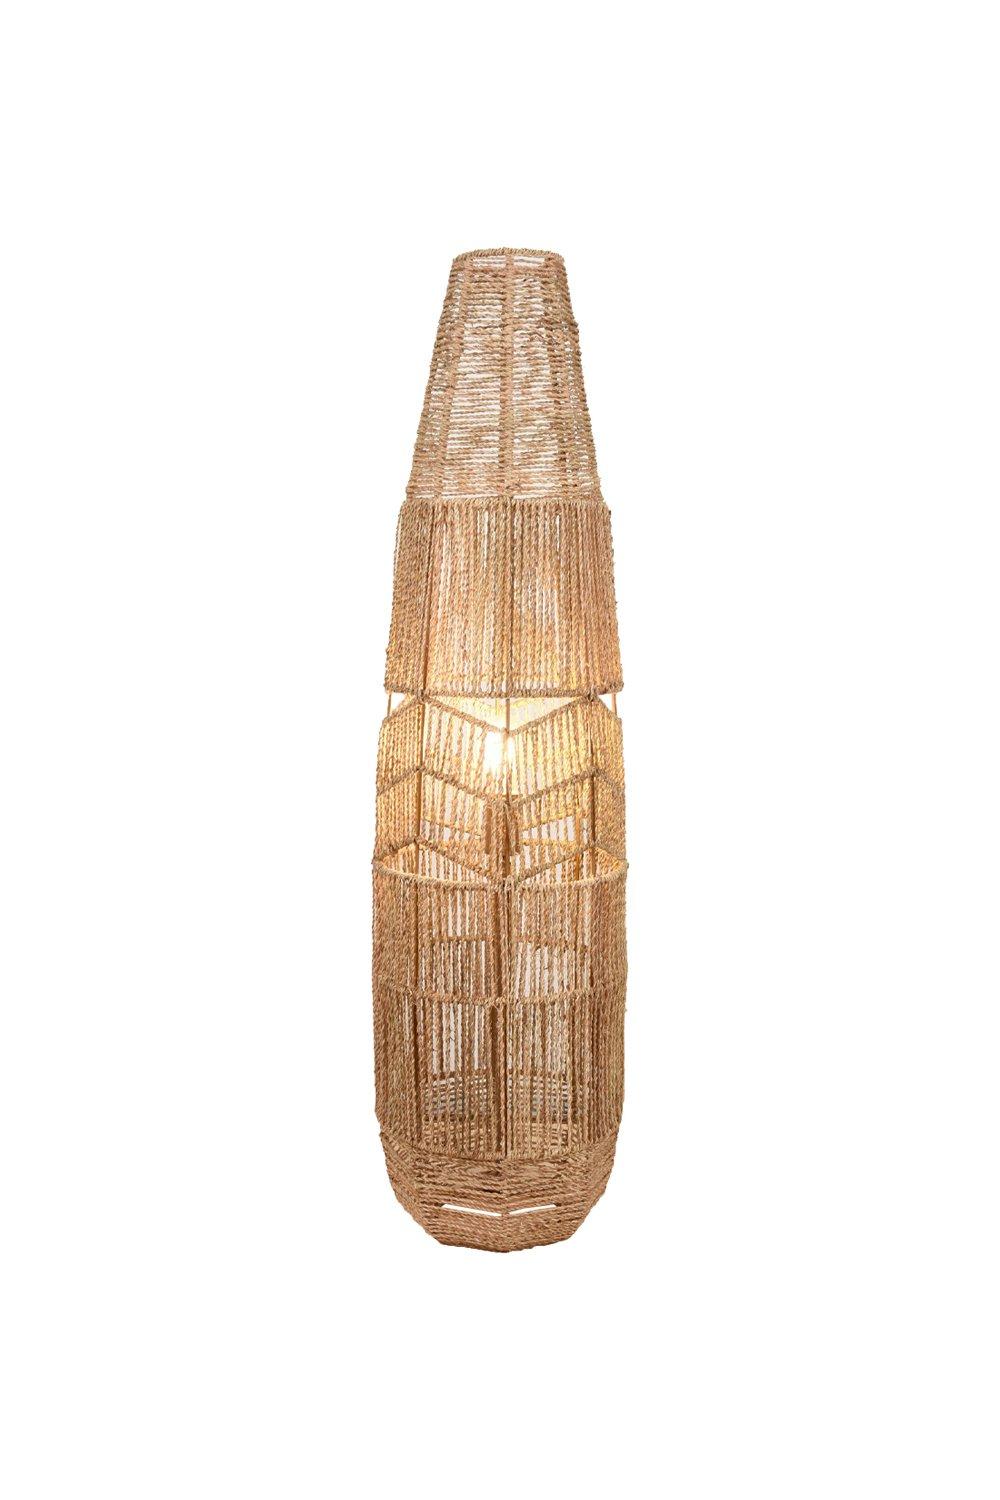 'Maui' Floor Lamp